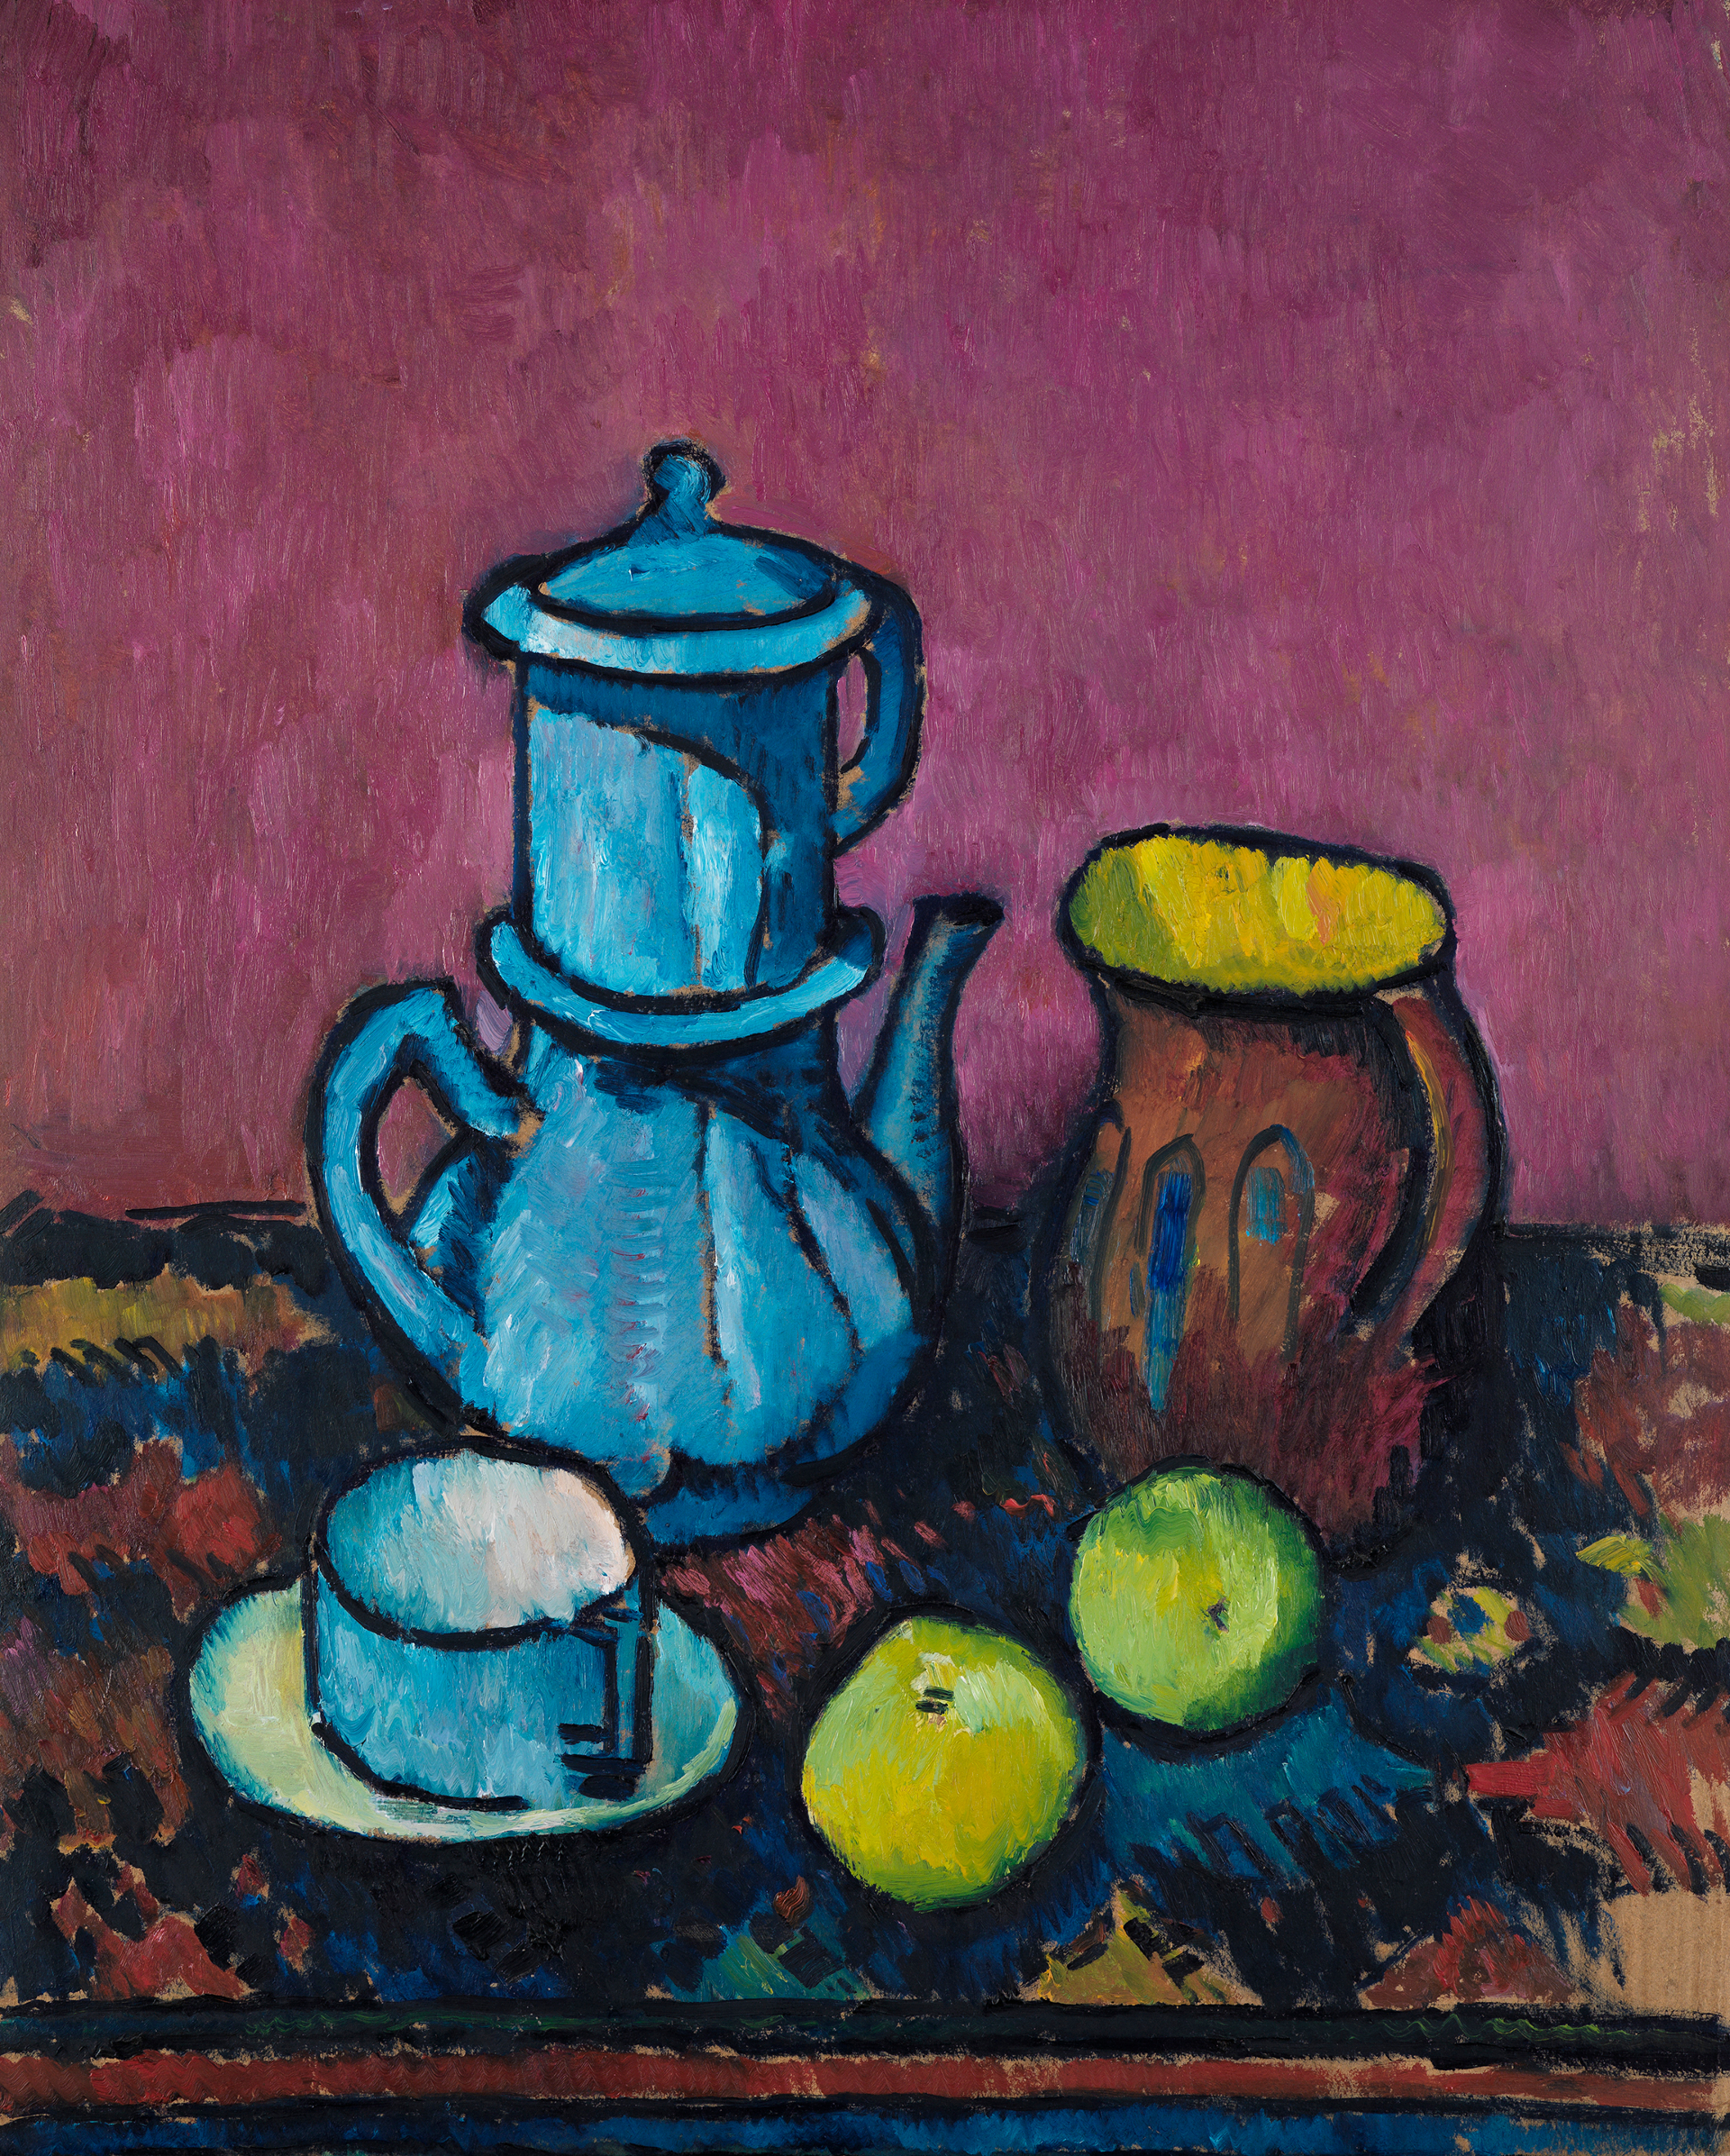 Detail aus Kanoldts Stillleben mit Kaffeegeschirr und Äpfeln. Die Kanne und die Tasse sind blau. Der Hintergrund ist lila.